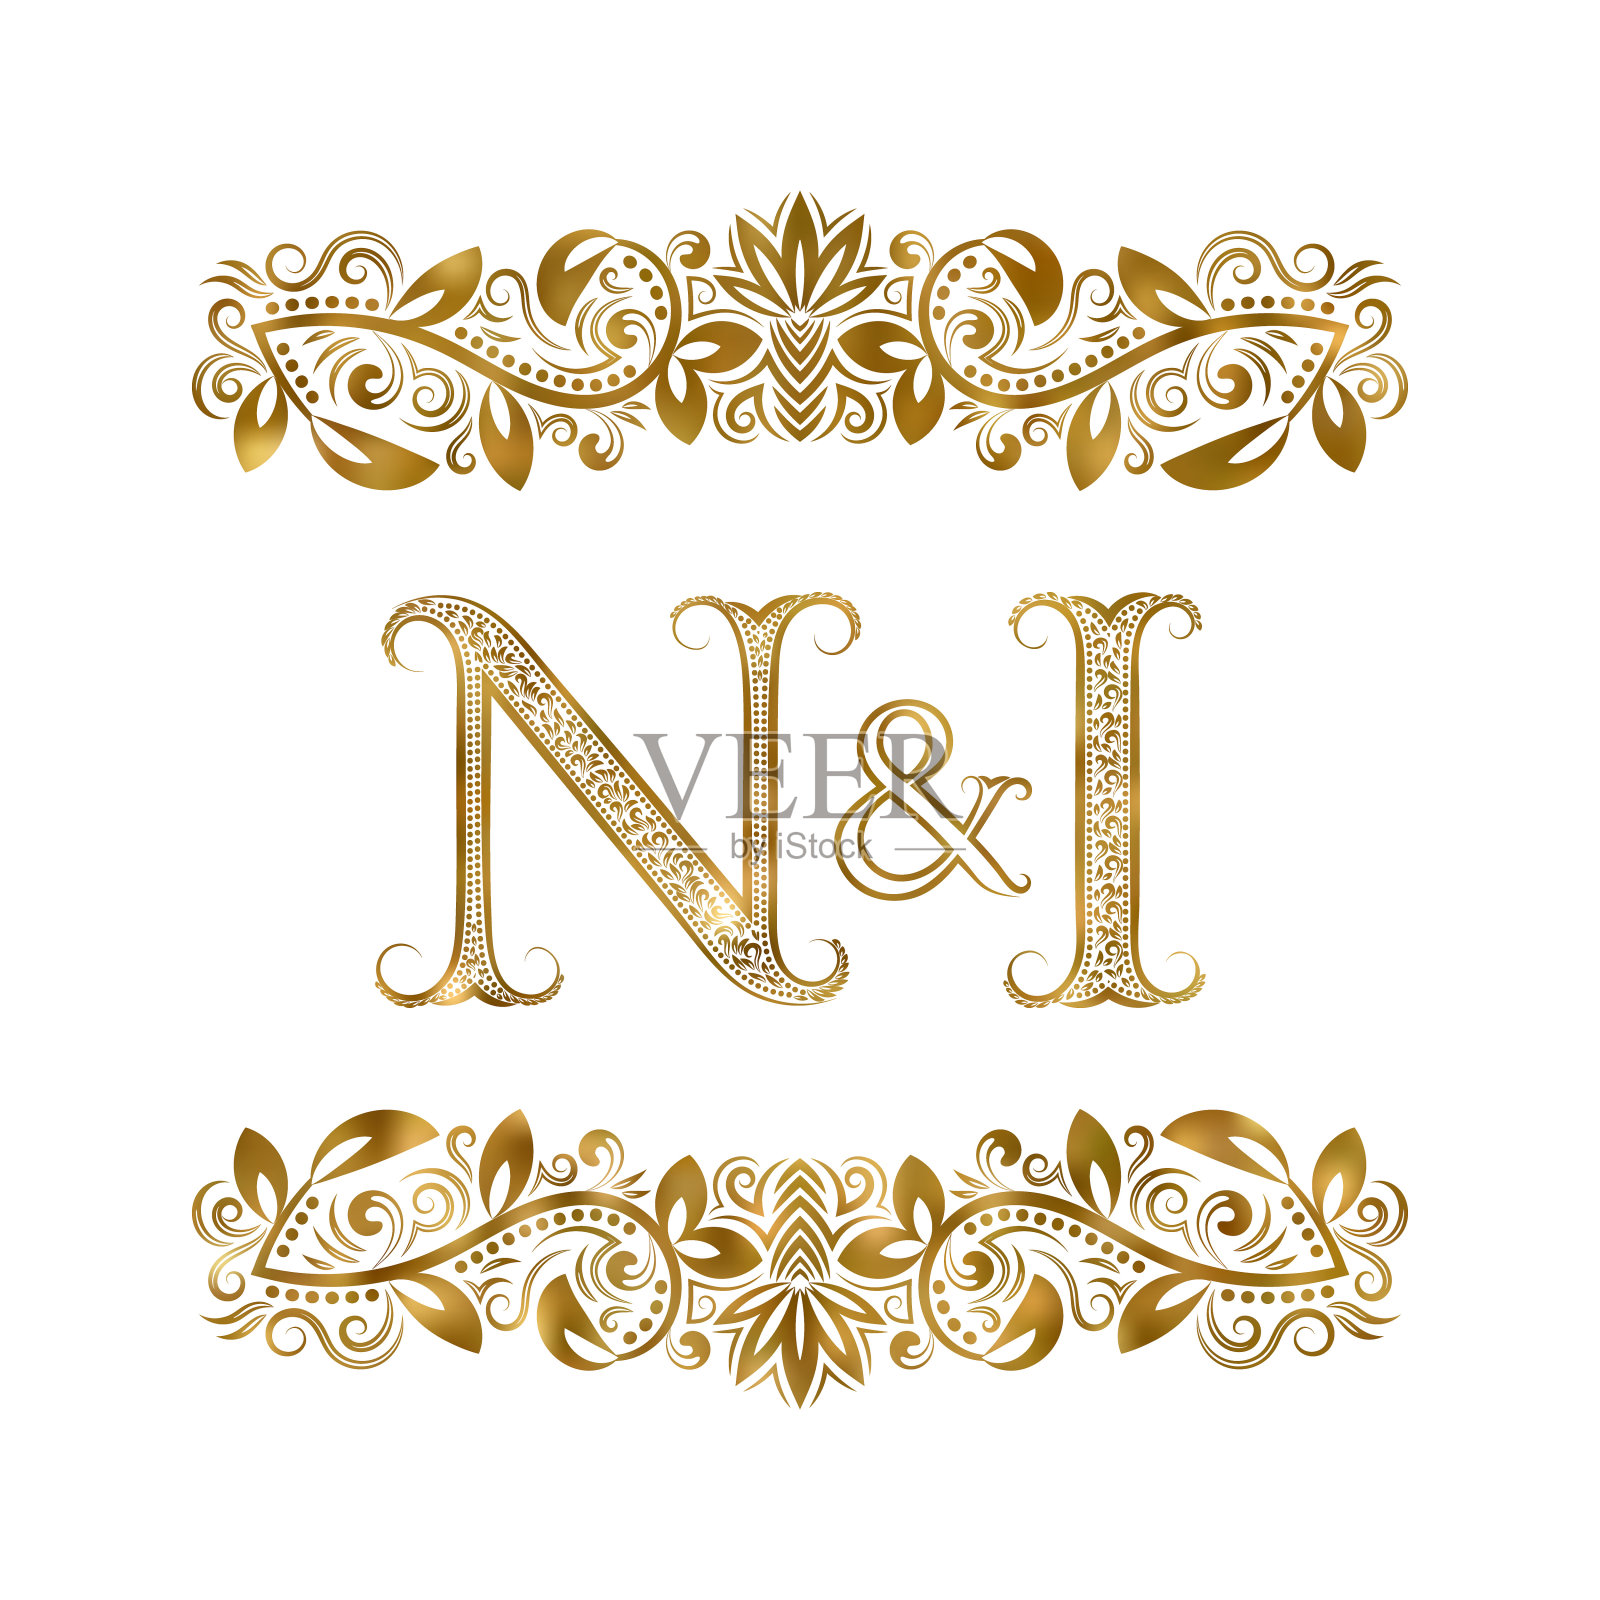 N和我复古的首字母符号。字母周围有装饰元素。皇室风格的婚礼或商业伙伴的字母组合。插画图片素材